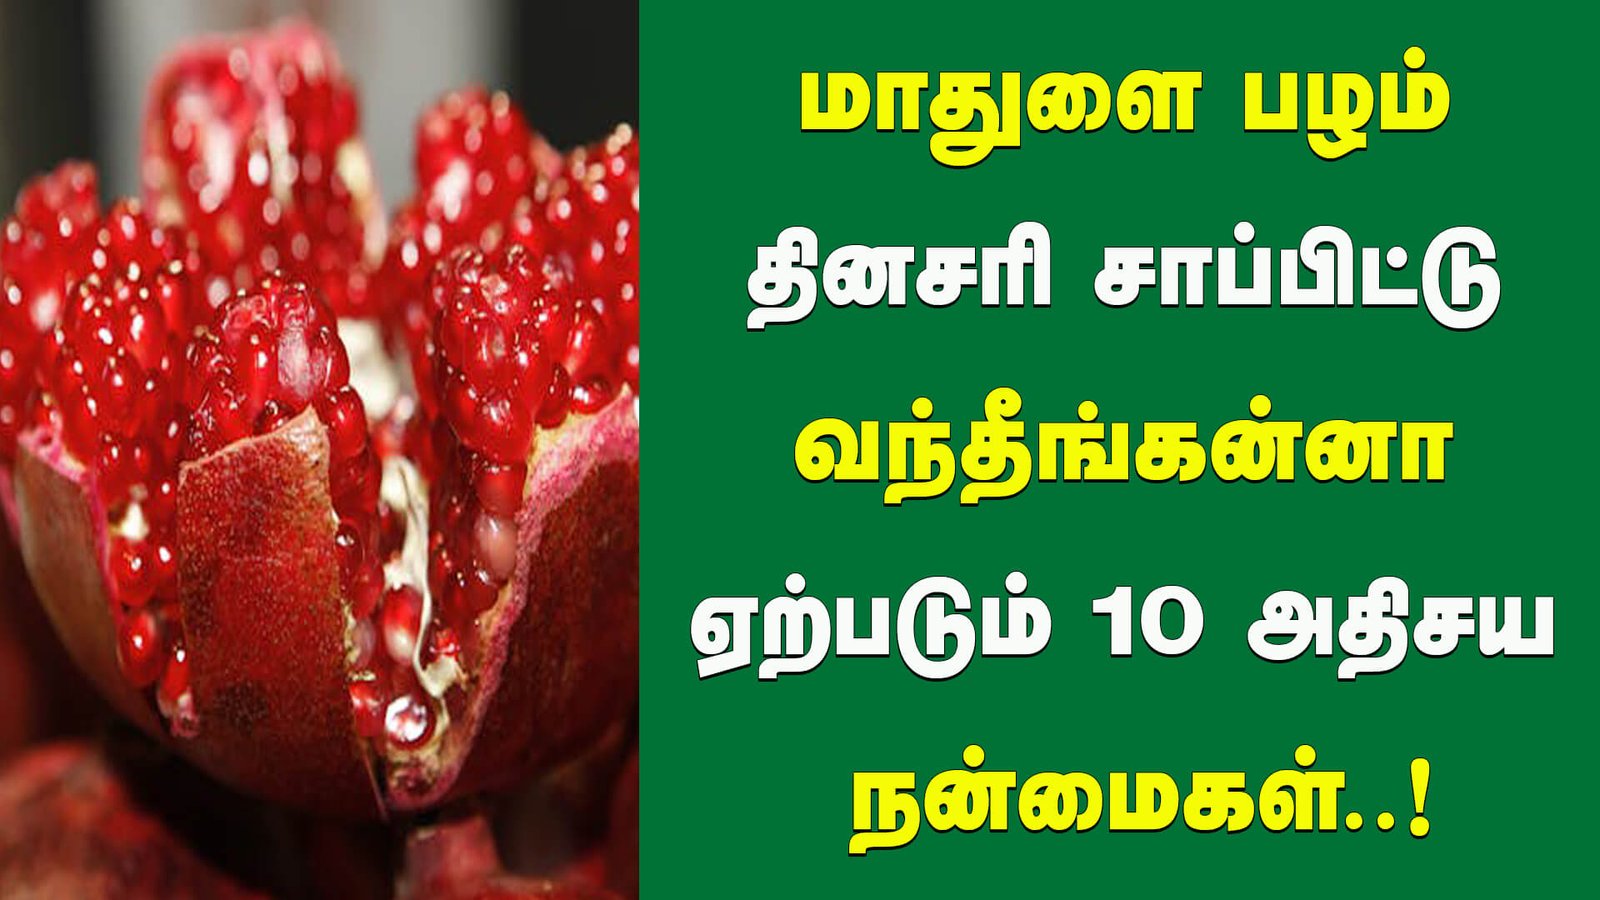 மாதுளை பழம் தினசரி சாப்பிட்டு வந்தீங்கன்னா ஏற்படும் 10 அதிசய நன்மைகள் - 10 Amazing Health Benefits of Mathulai in Tamil